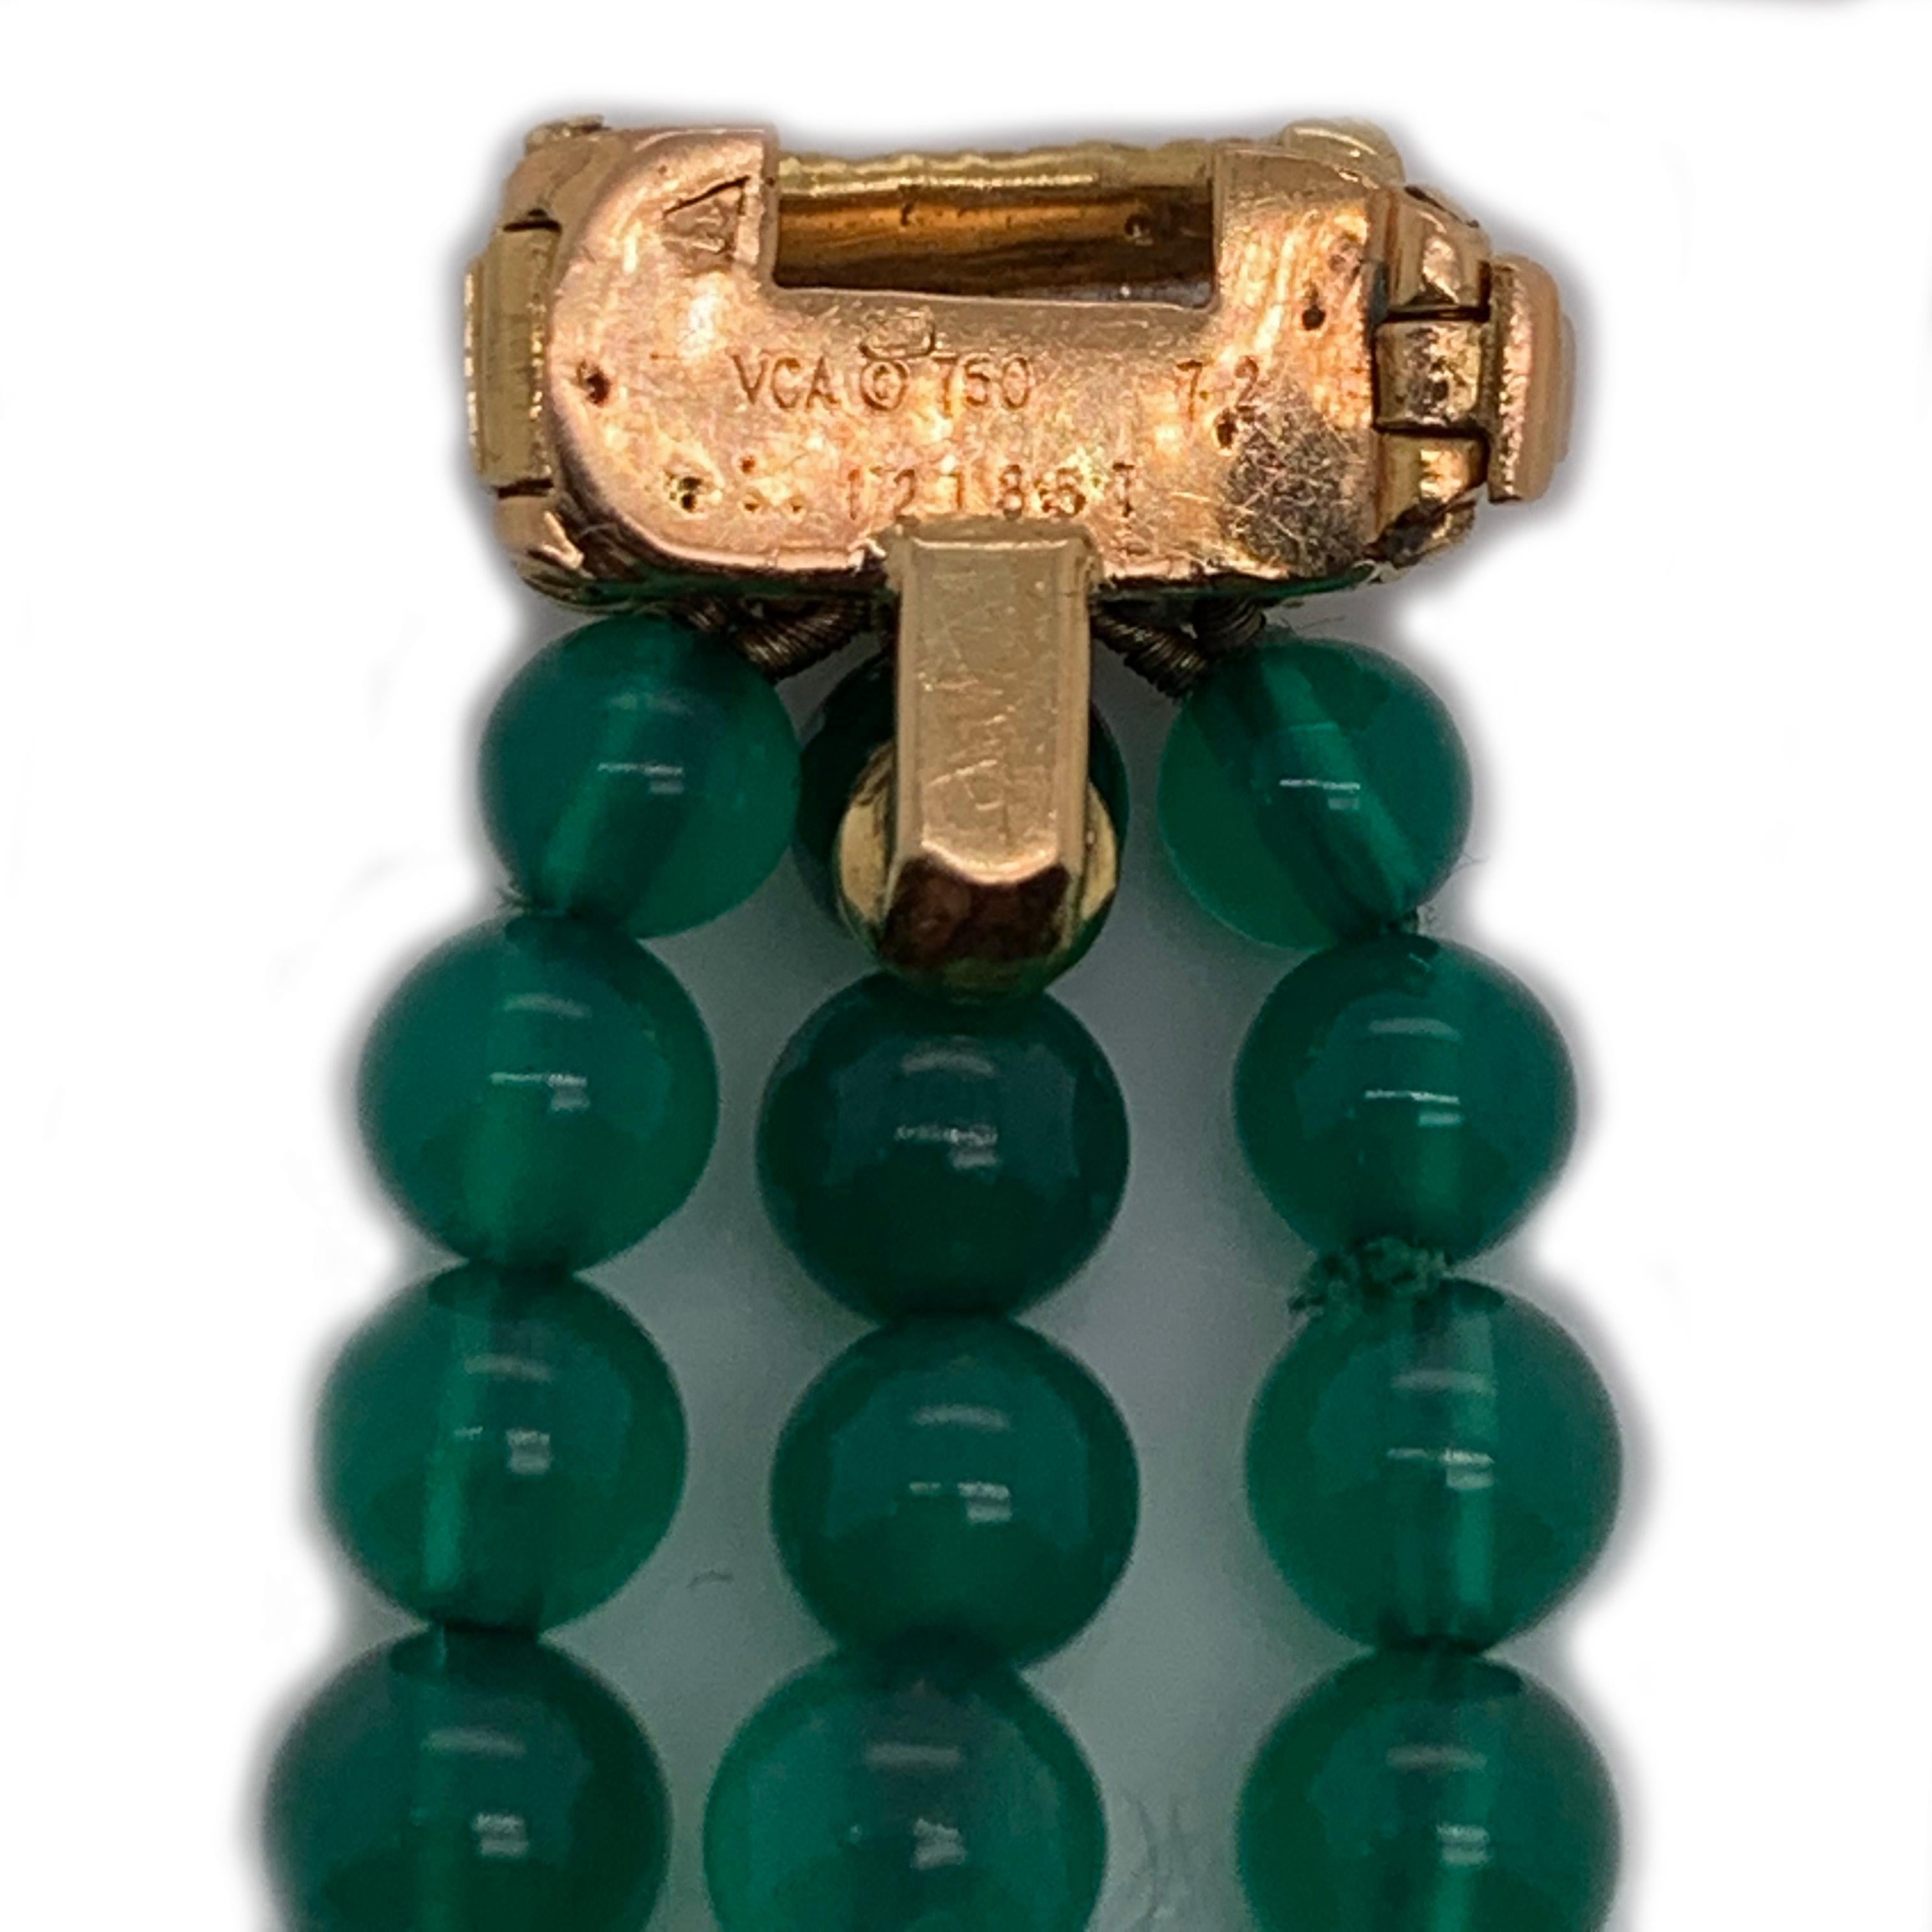 Un, magnifique bracelet de 7.5po Van Cleefs and Arpels en or jaune 18kt, diamant et calcédoine. Avec un  poids de 28,8 grammes et une largeur de 0,5 pouce. Ce magnifique V.C.A. estampillé 121857 présente une belle collection de perles de calcédoine